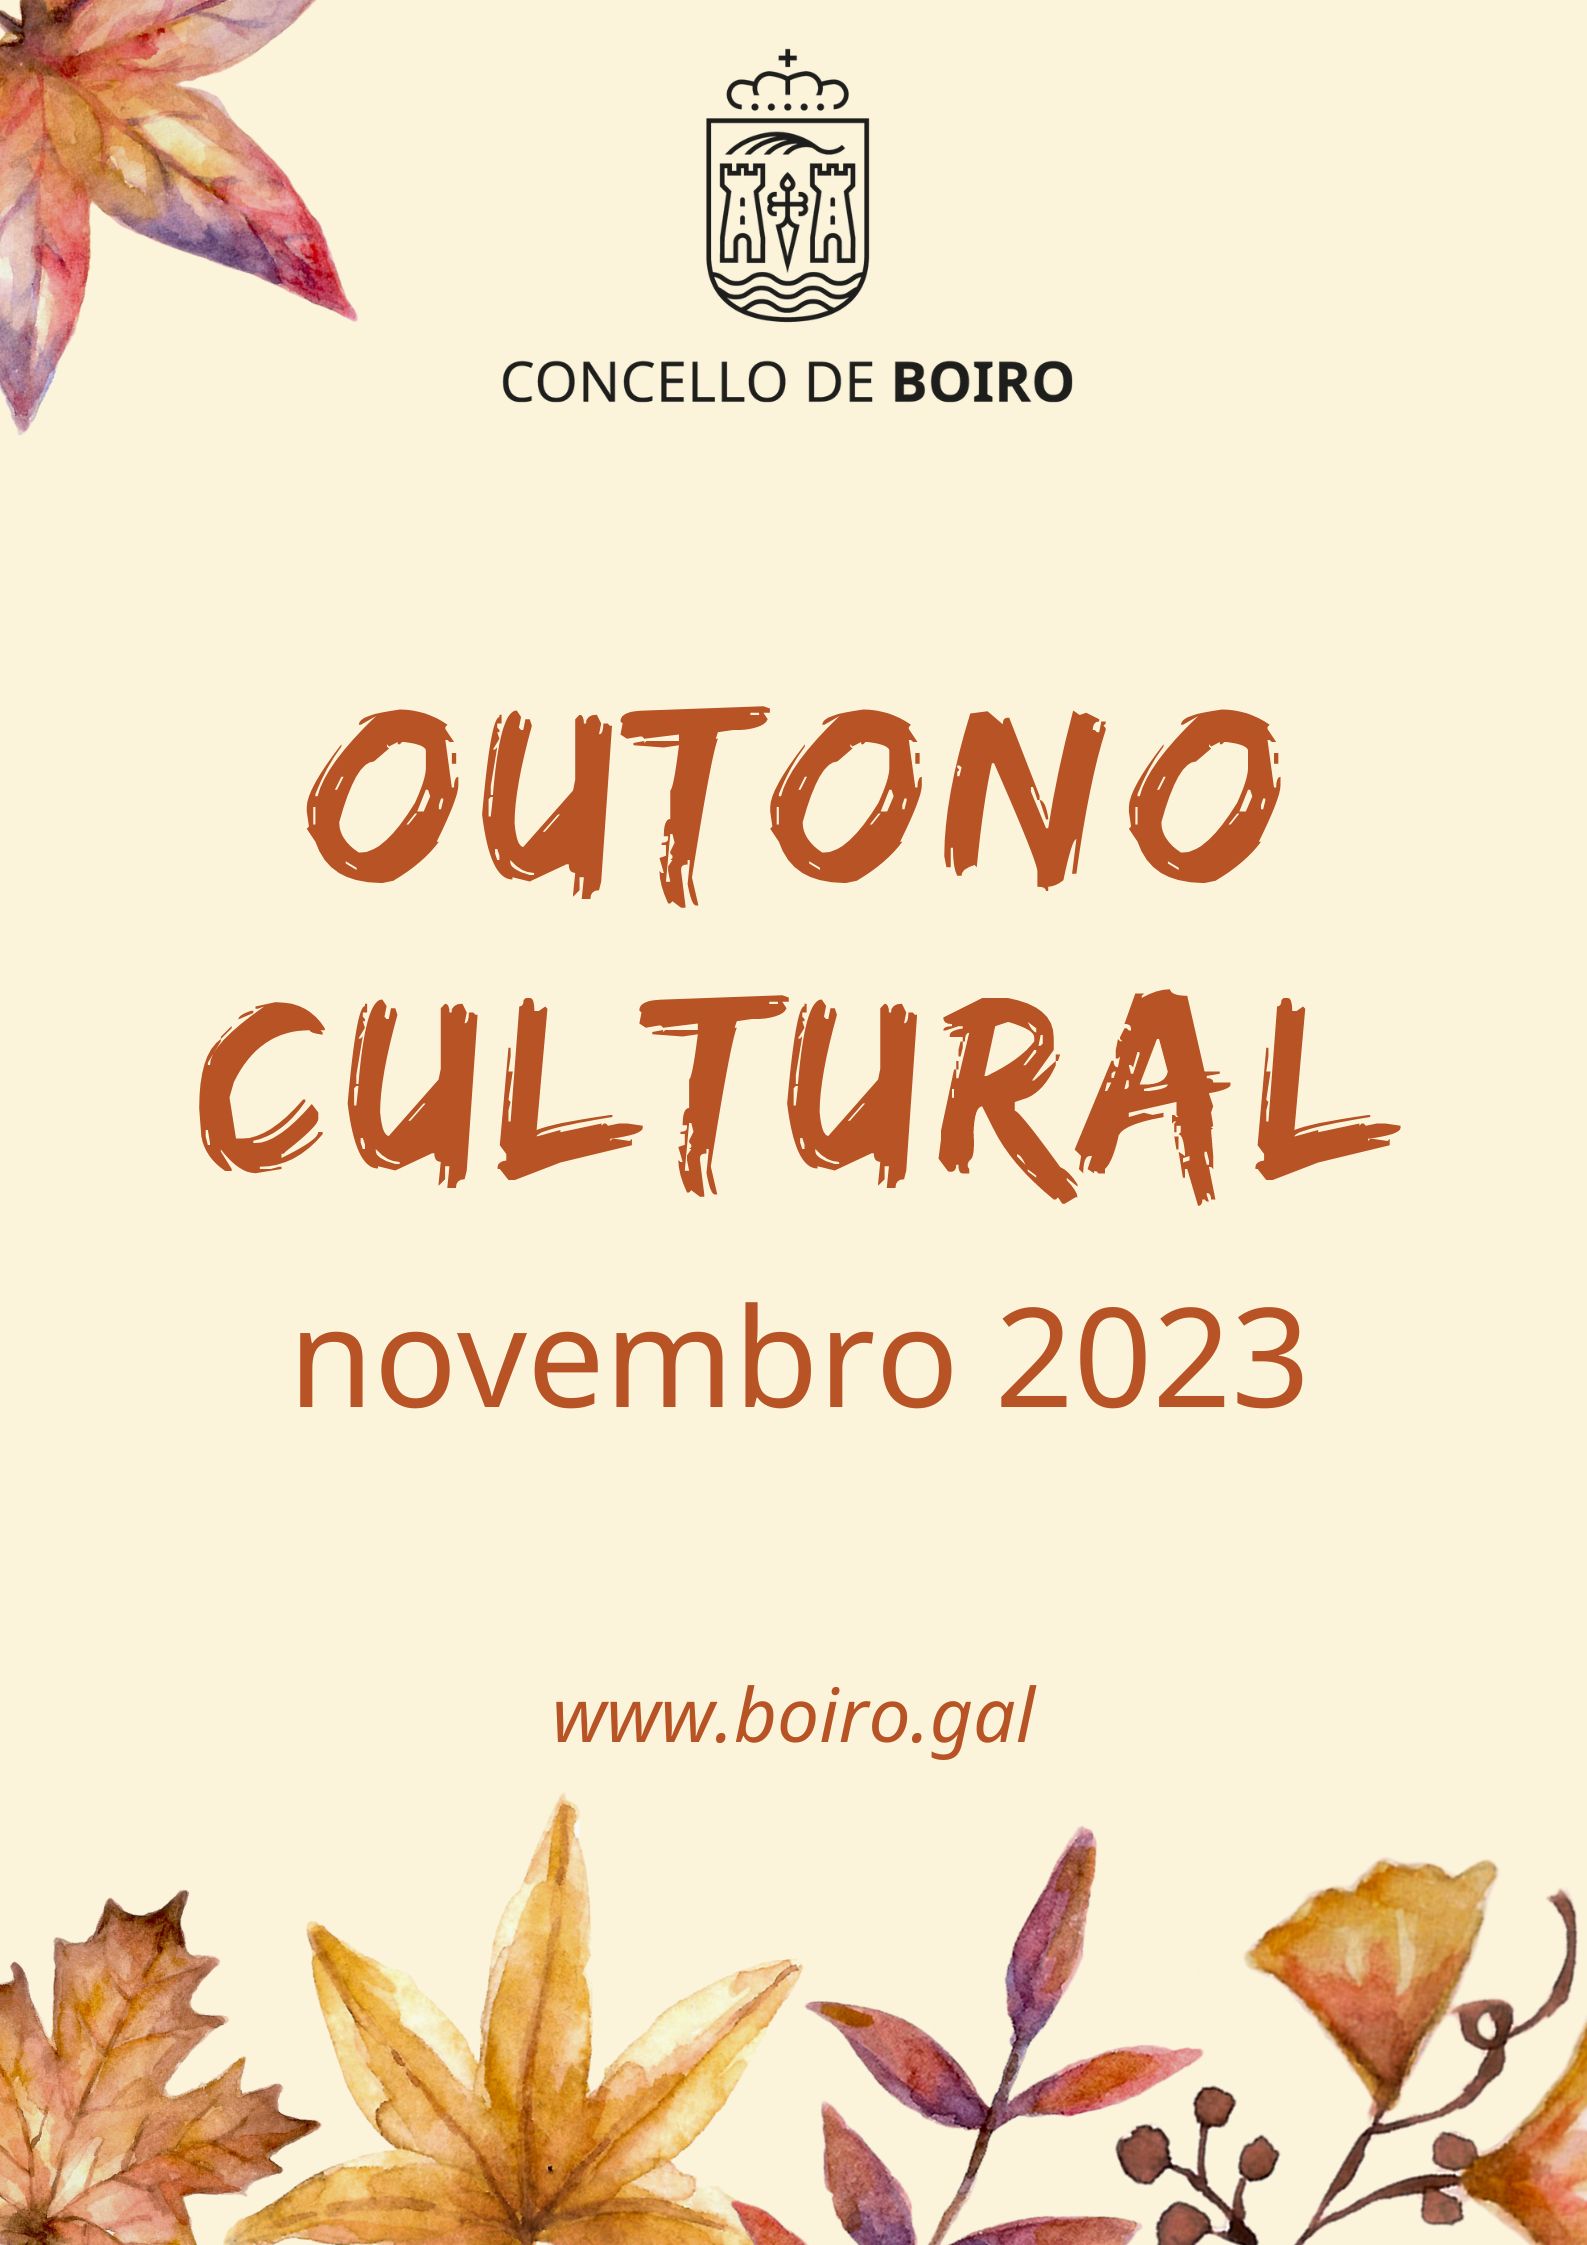 Programación cultural novembro 2023 | Concello de Boiro